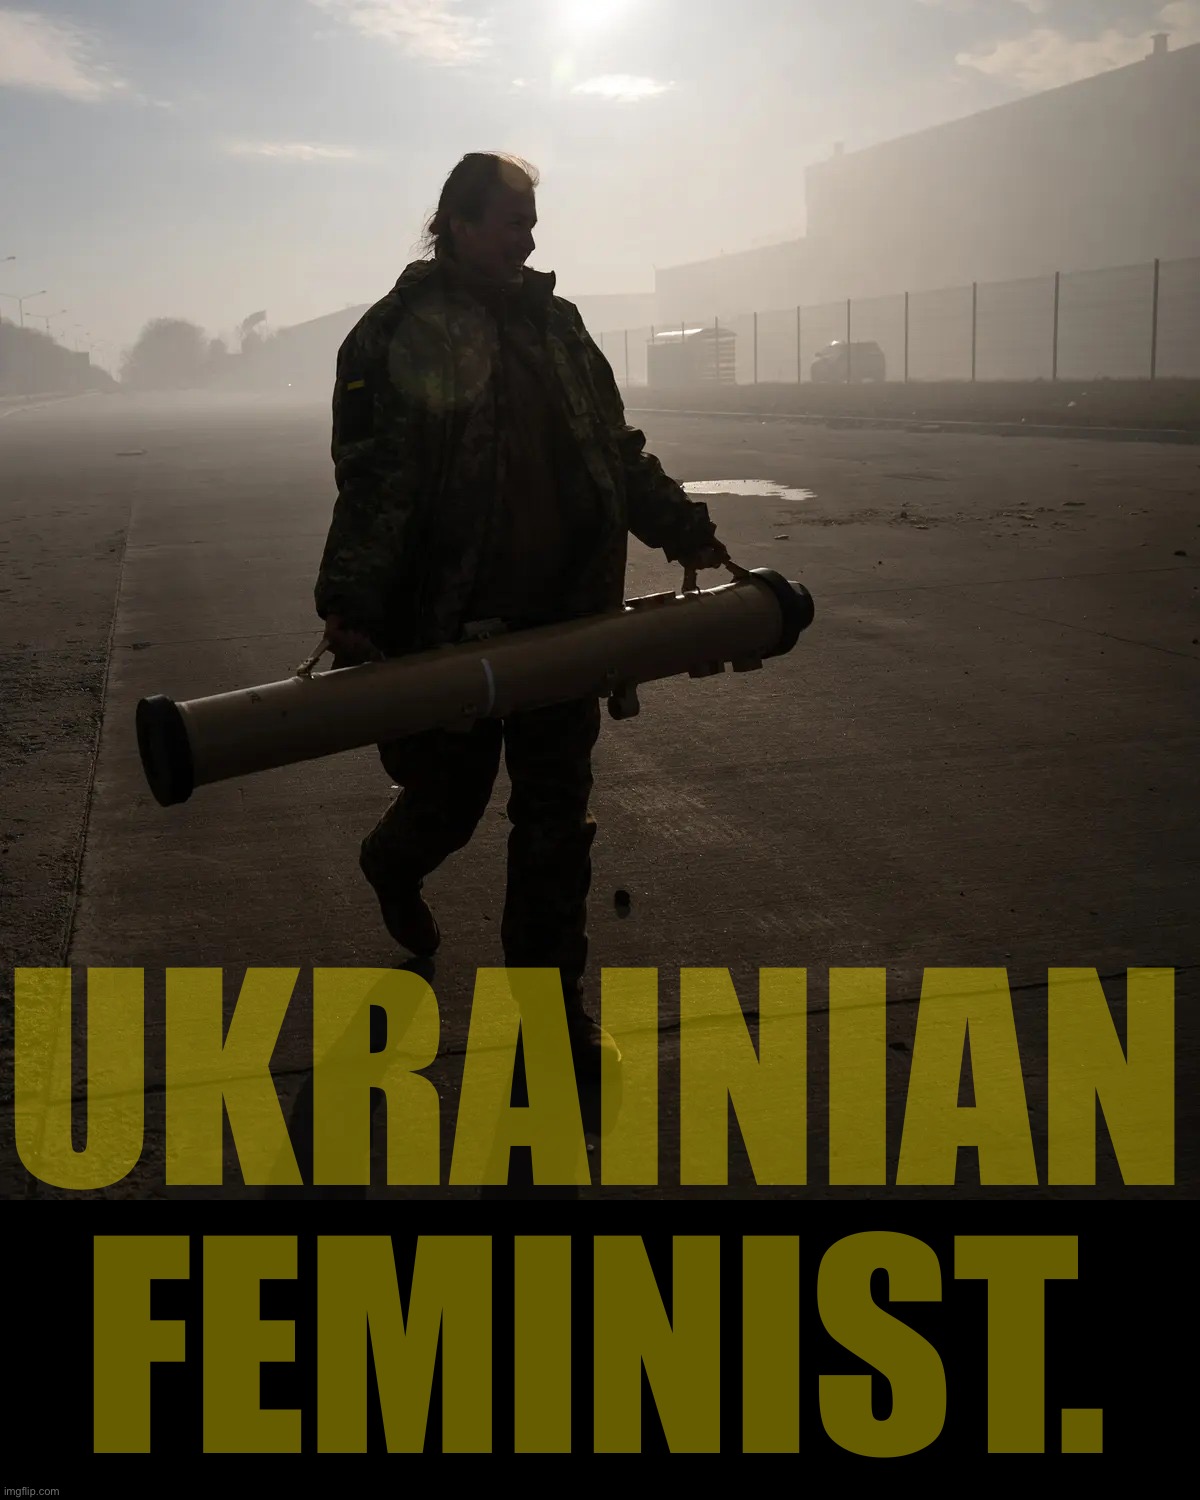 Ukrainian soldier | UKRAINIAN FEMINIST. | image tagged in ukrainian soldier,ukraine,ukrainian,ukrainian lives matter,feminism,feminist | made w/ Imgflip meme maker